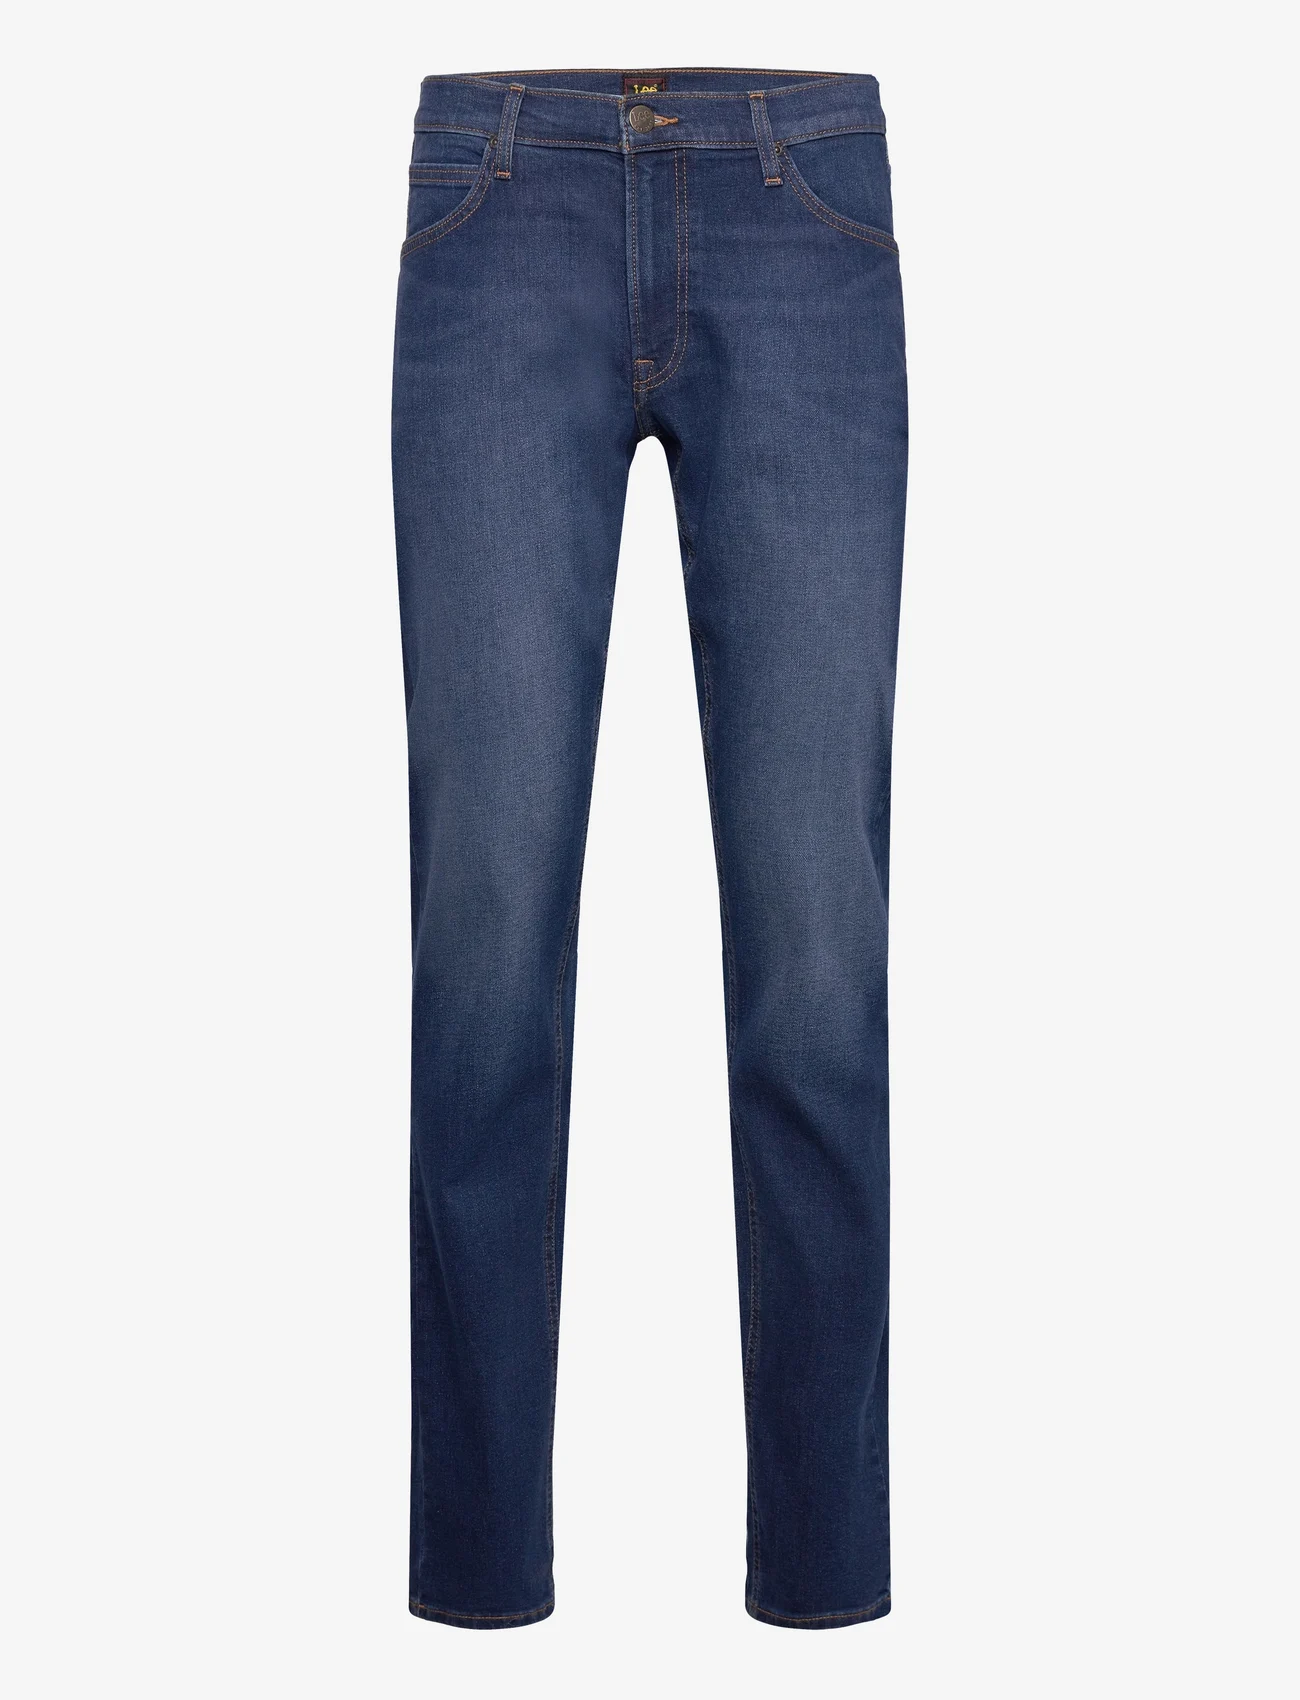 Lee Jeans - DAREN ZIP FLY - suorat farkut - dark worn - 0